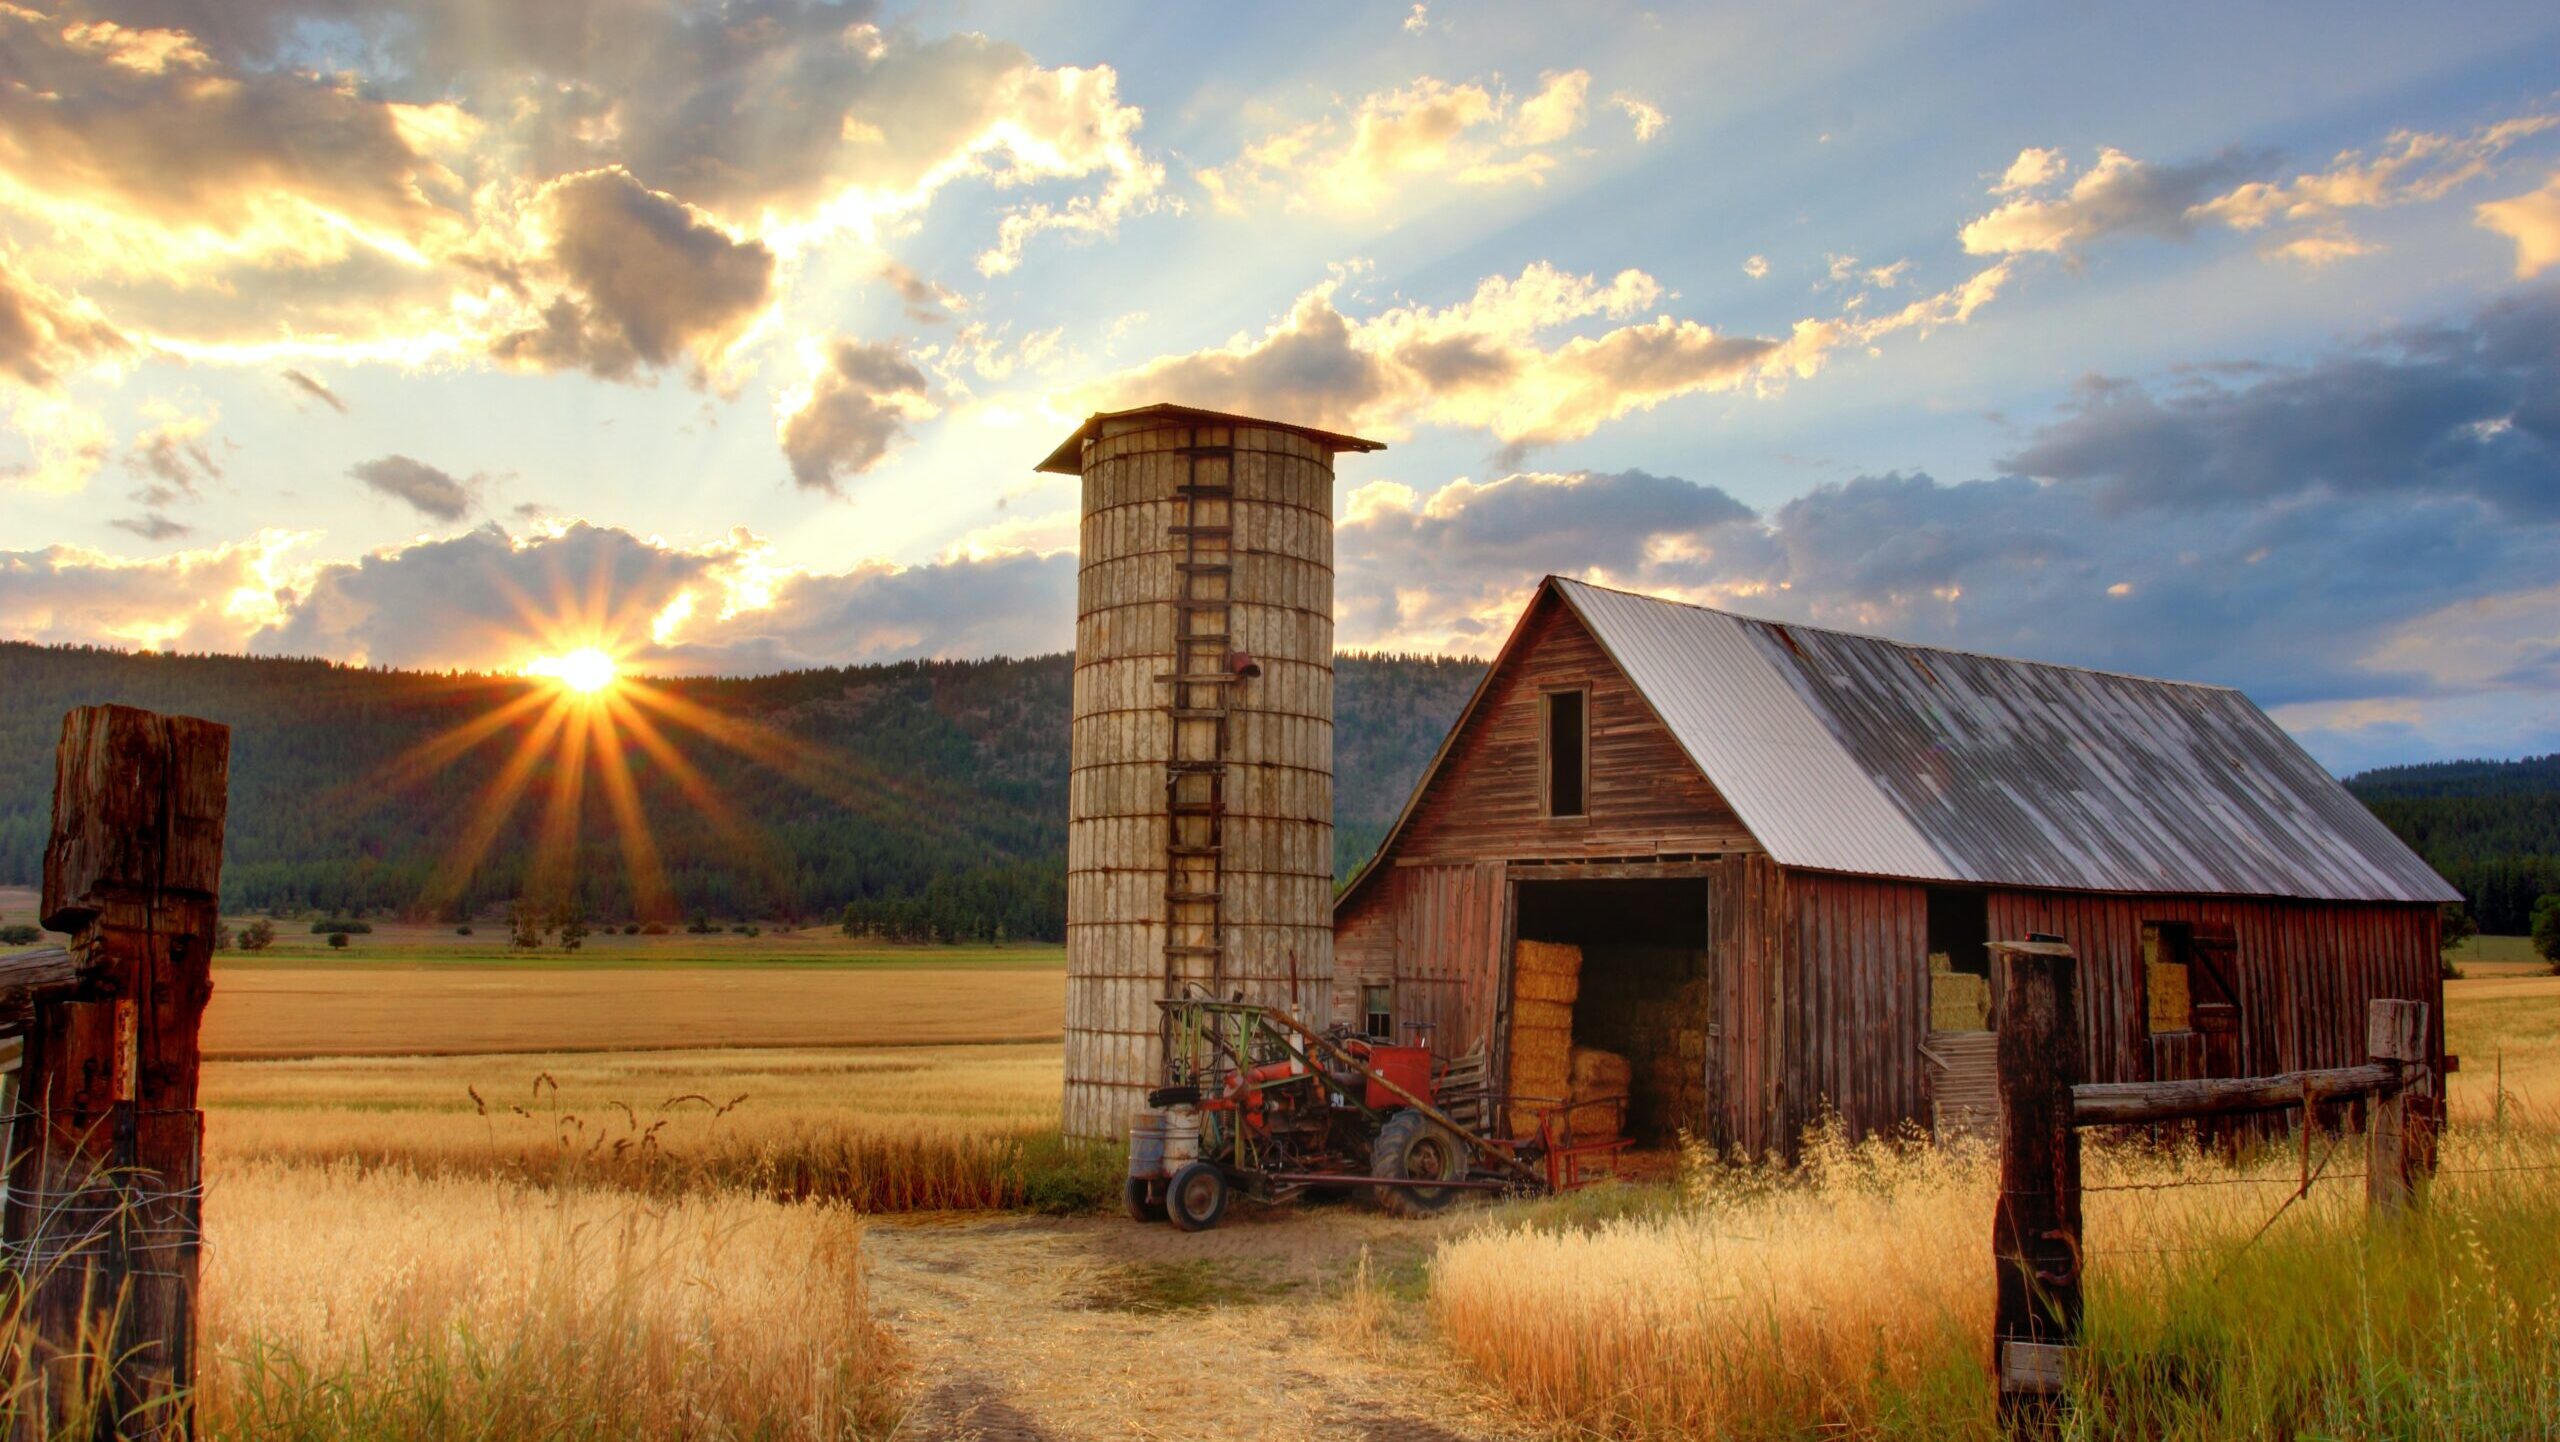 Farm with sun setting.